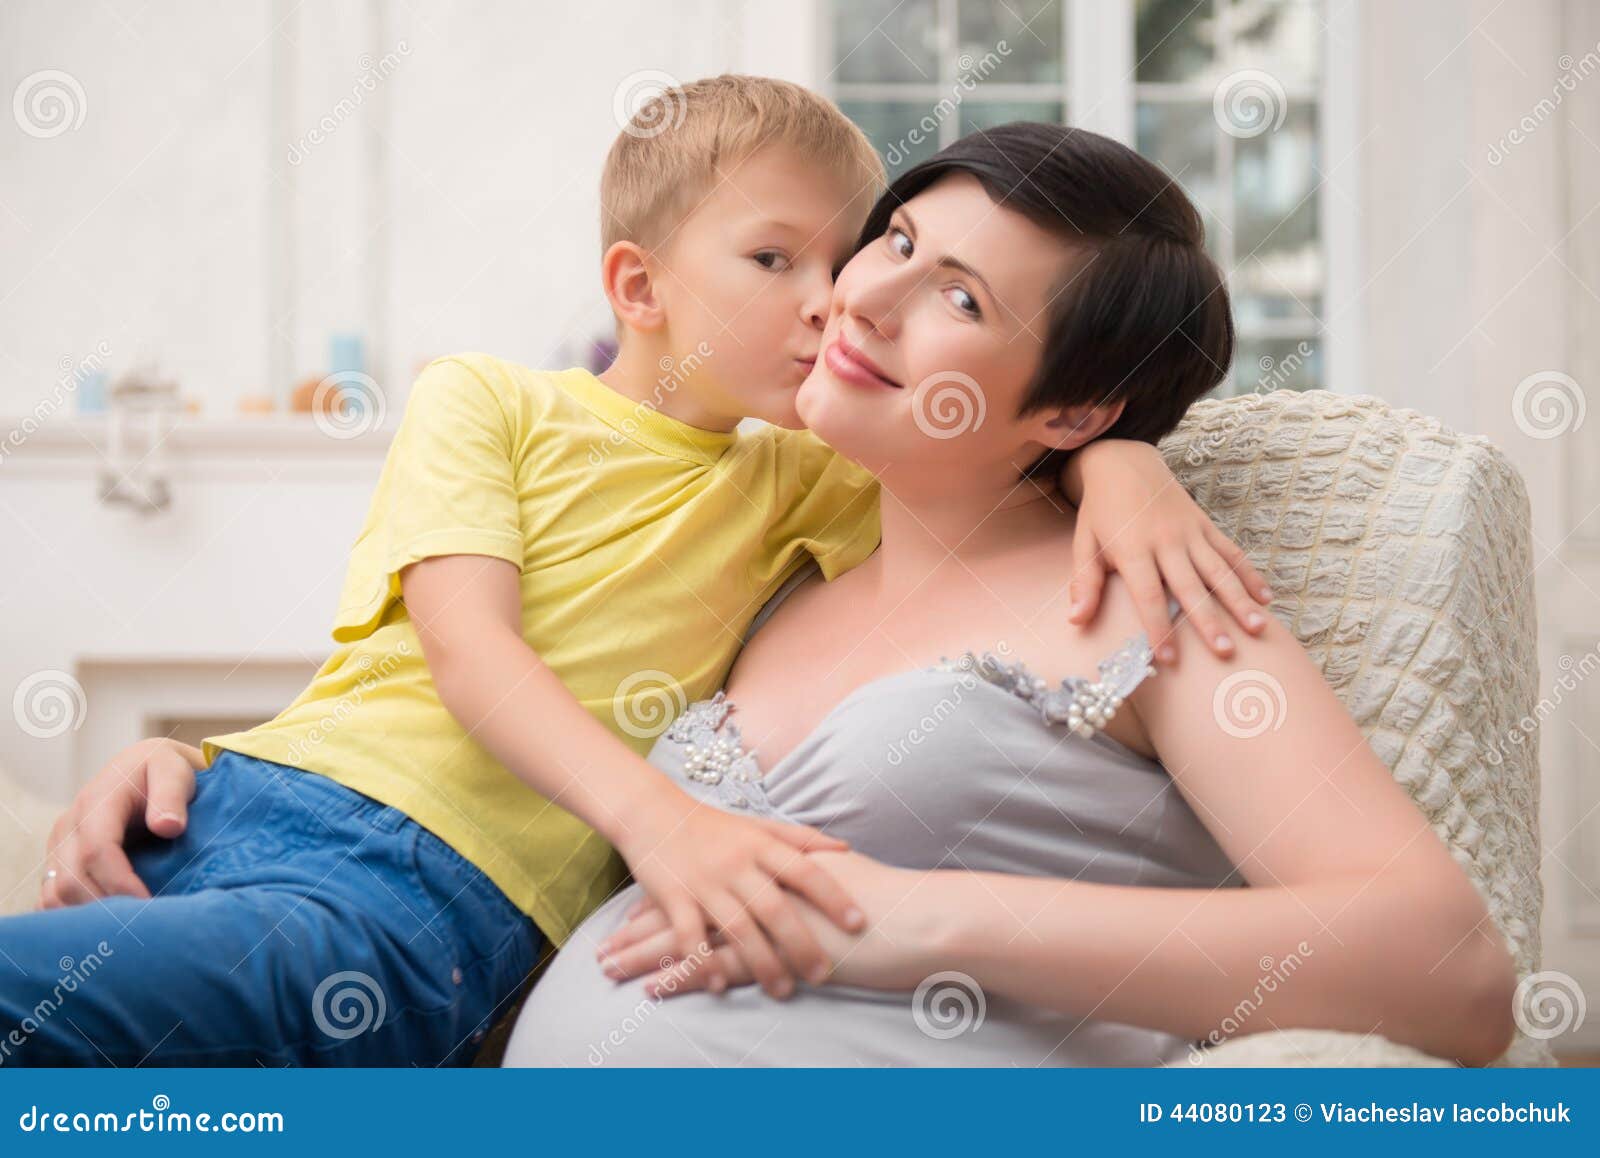 Волосатые киски мама с сыном